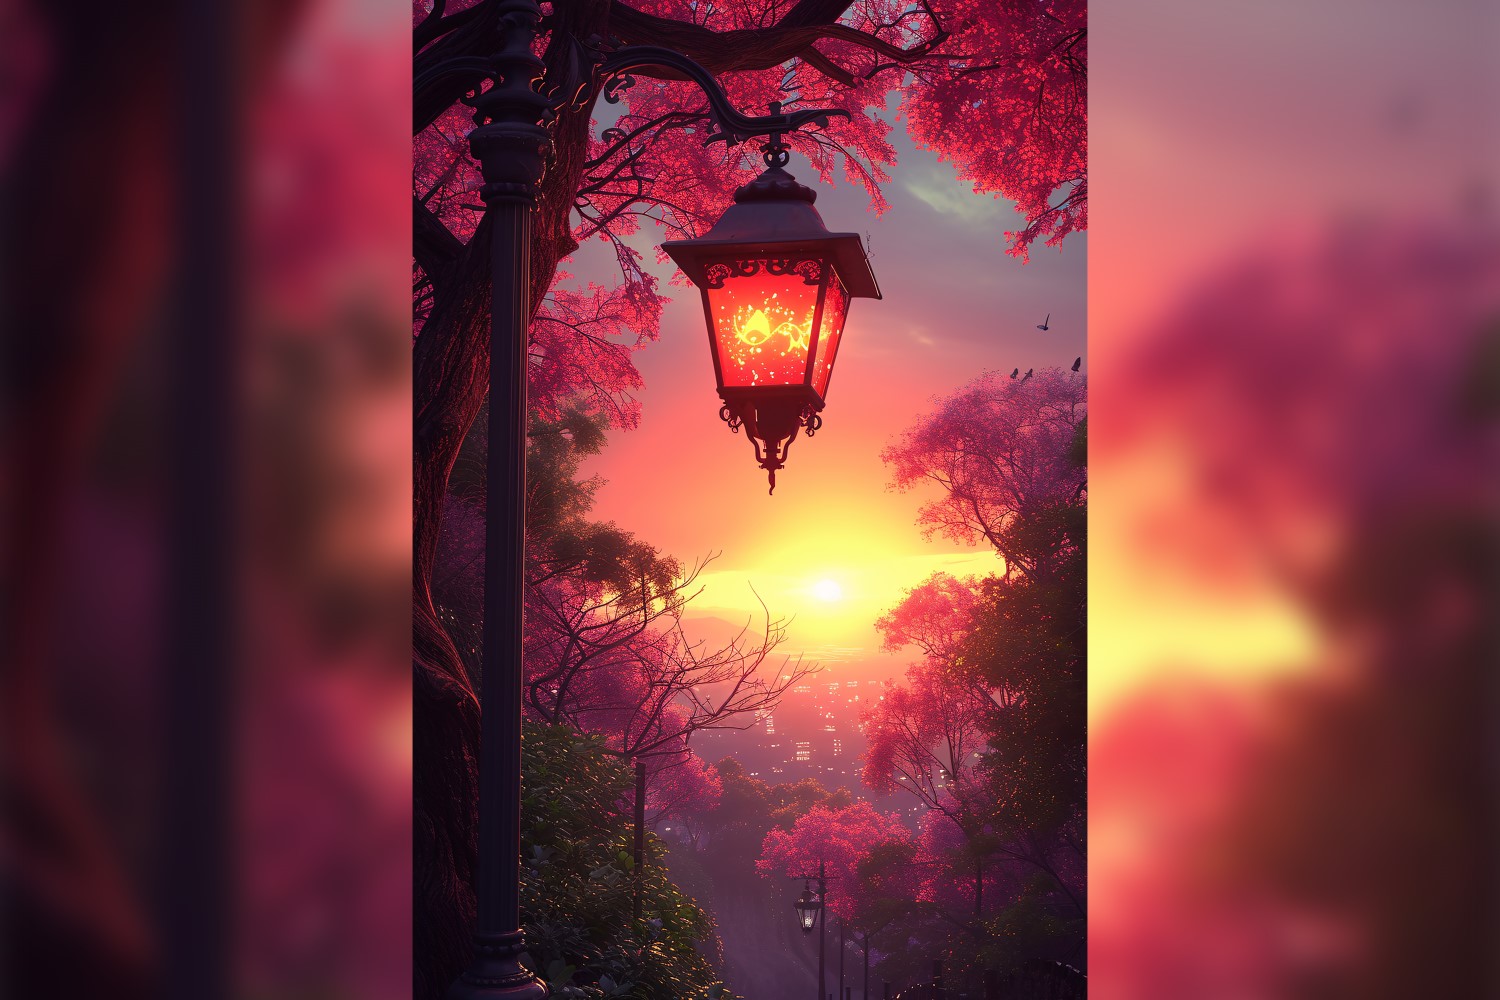 Ramadan Kareem greeting card poster design with lantern & trees background